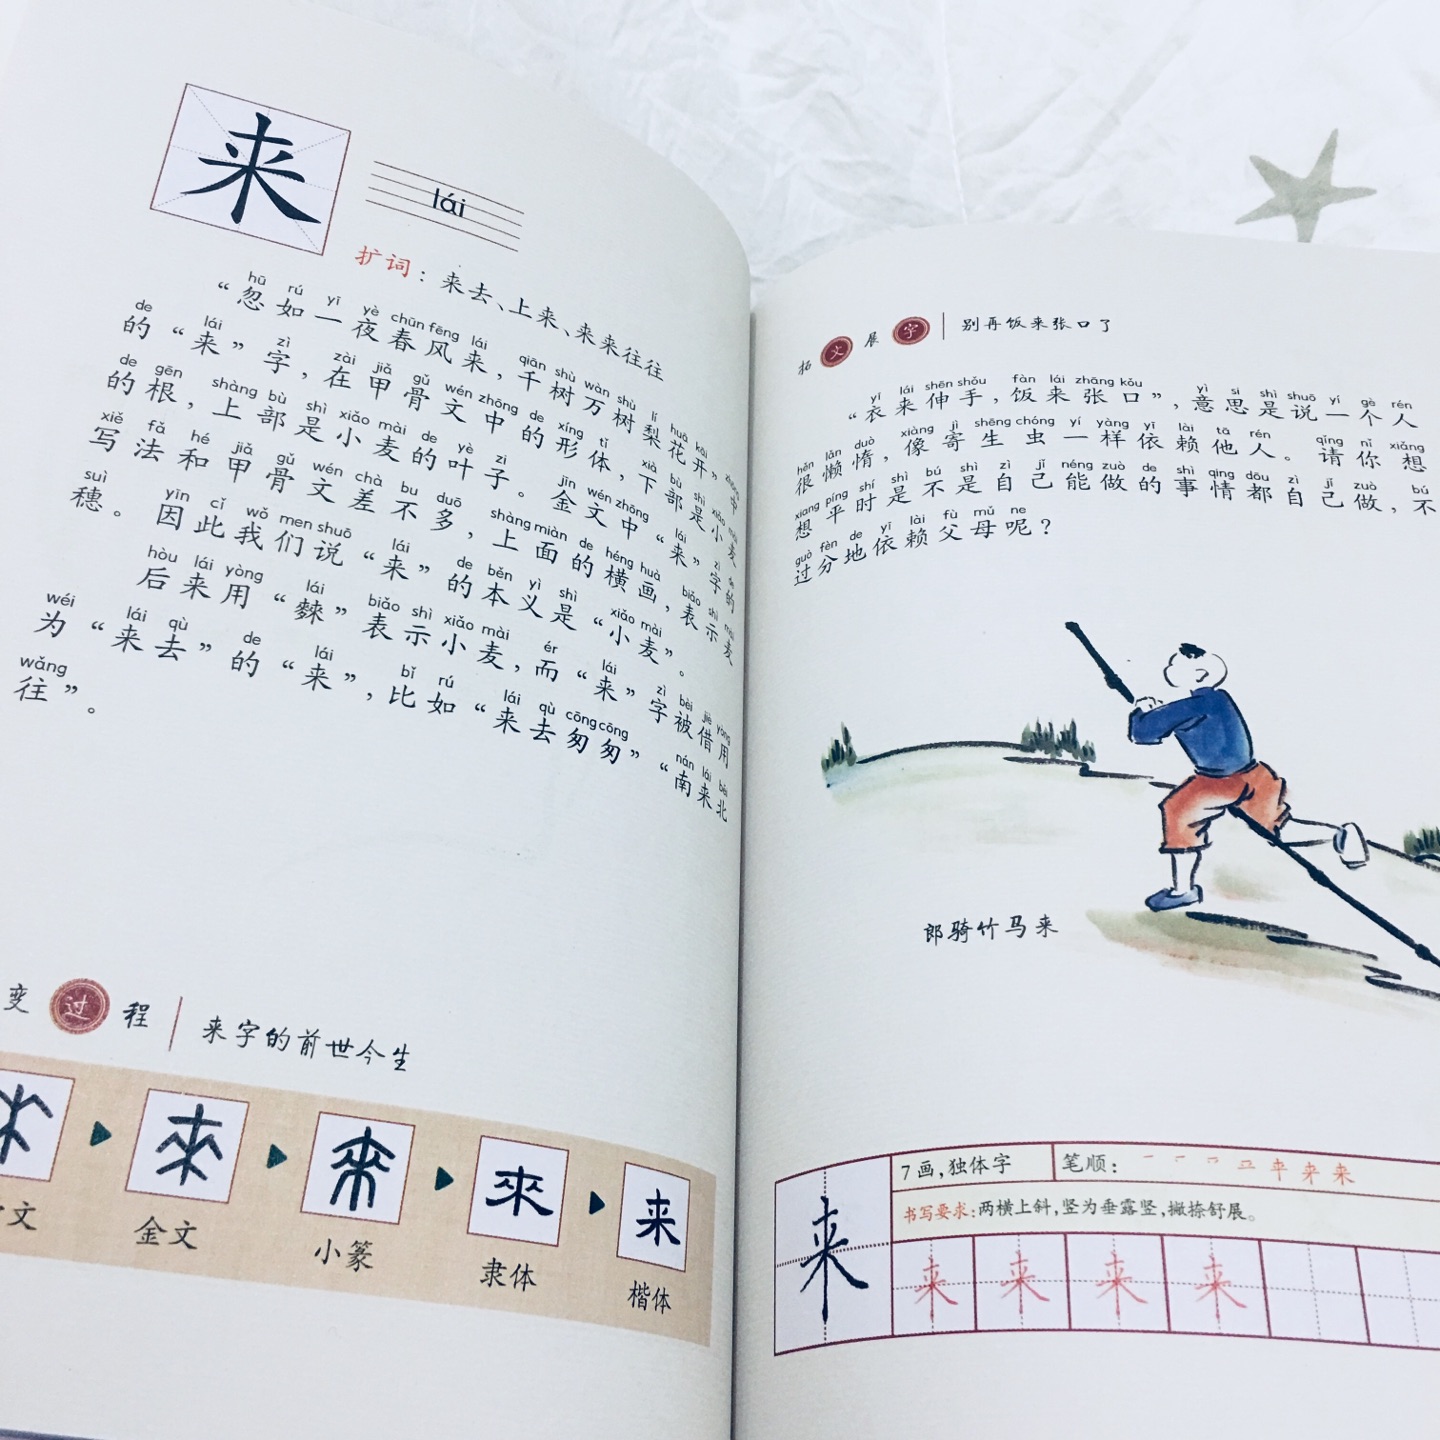 对照了一下，这套书的汉字完全和人教版的识字顺序一致，方便孩子随课阅读，加深理解。里面还加入了很多典故、成语、诗词等，内容丰富，印刷质量也很好！